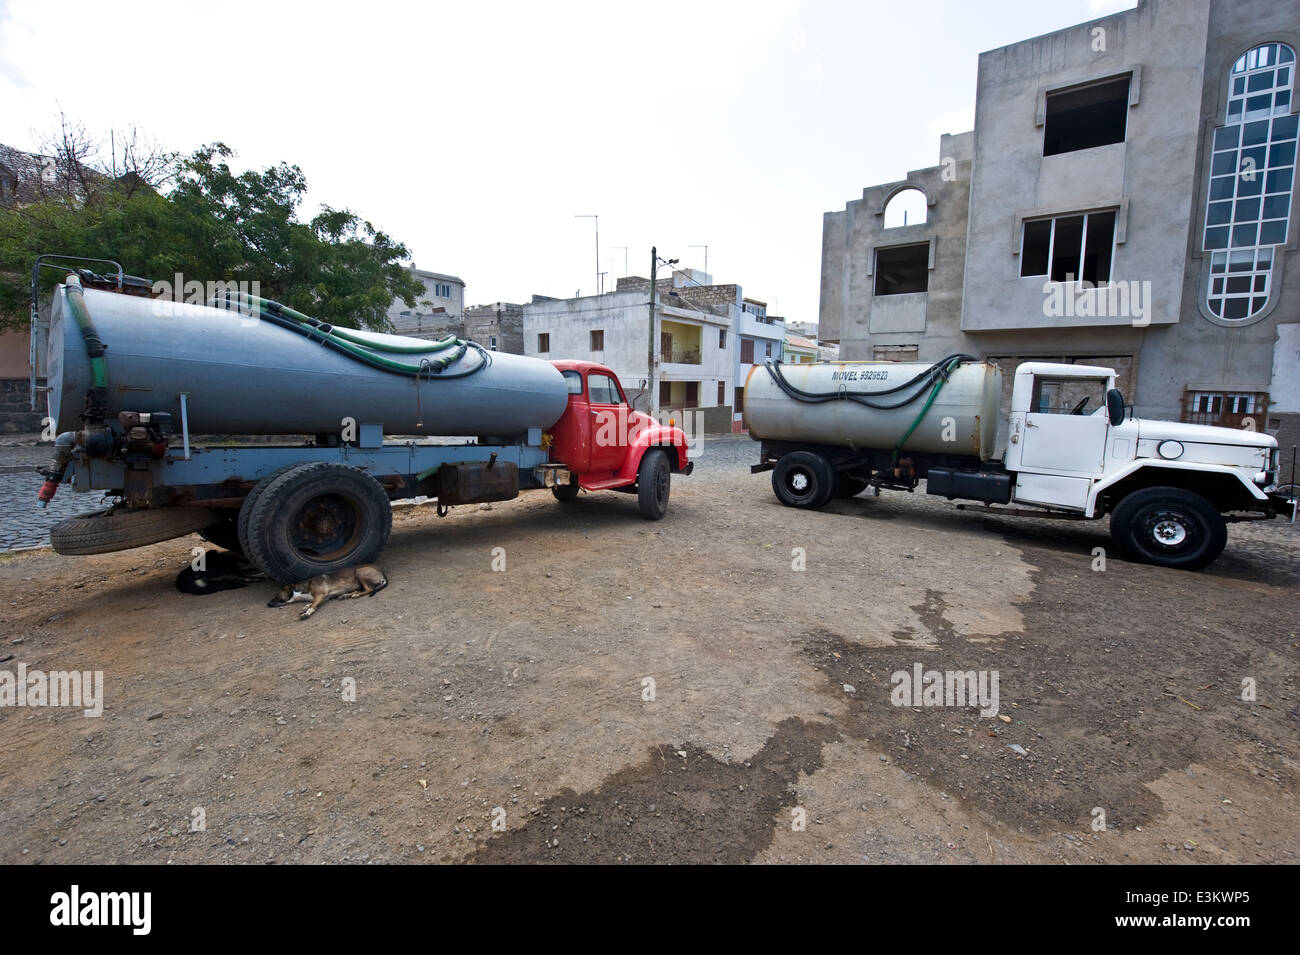 Véhicule de transport de l'eau à Mindelo, île de Sao Vicente, Cap Vert. Banque D'Images